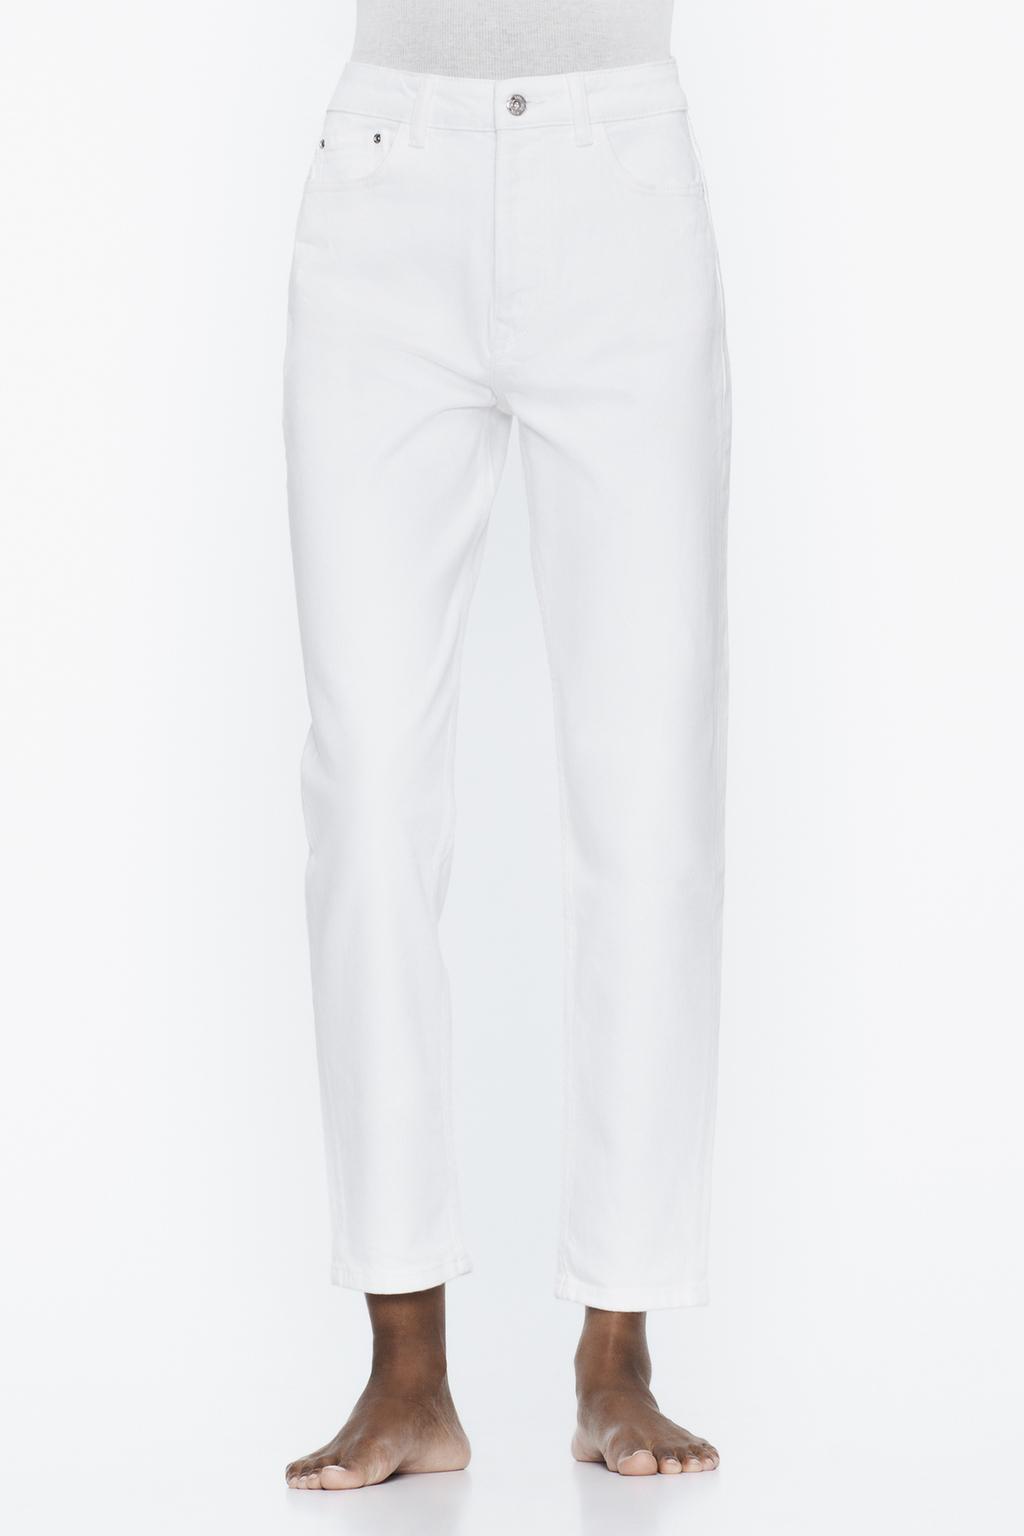 Джинсы мом z1975 ZARA, белый джинсы мом zara полуприлегающие завышенная посадка размер eu34 хаки